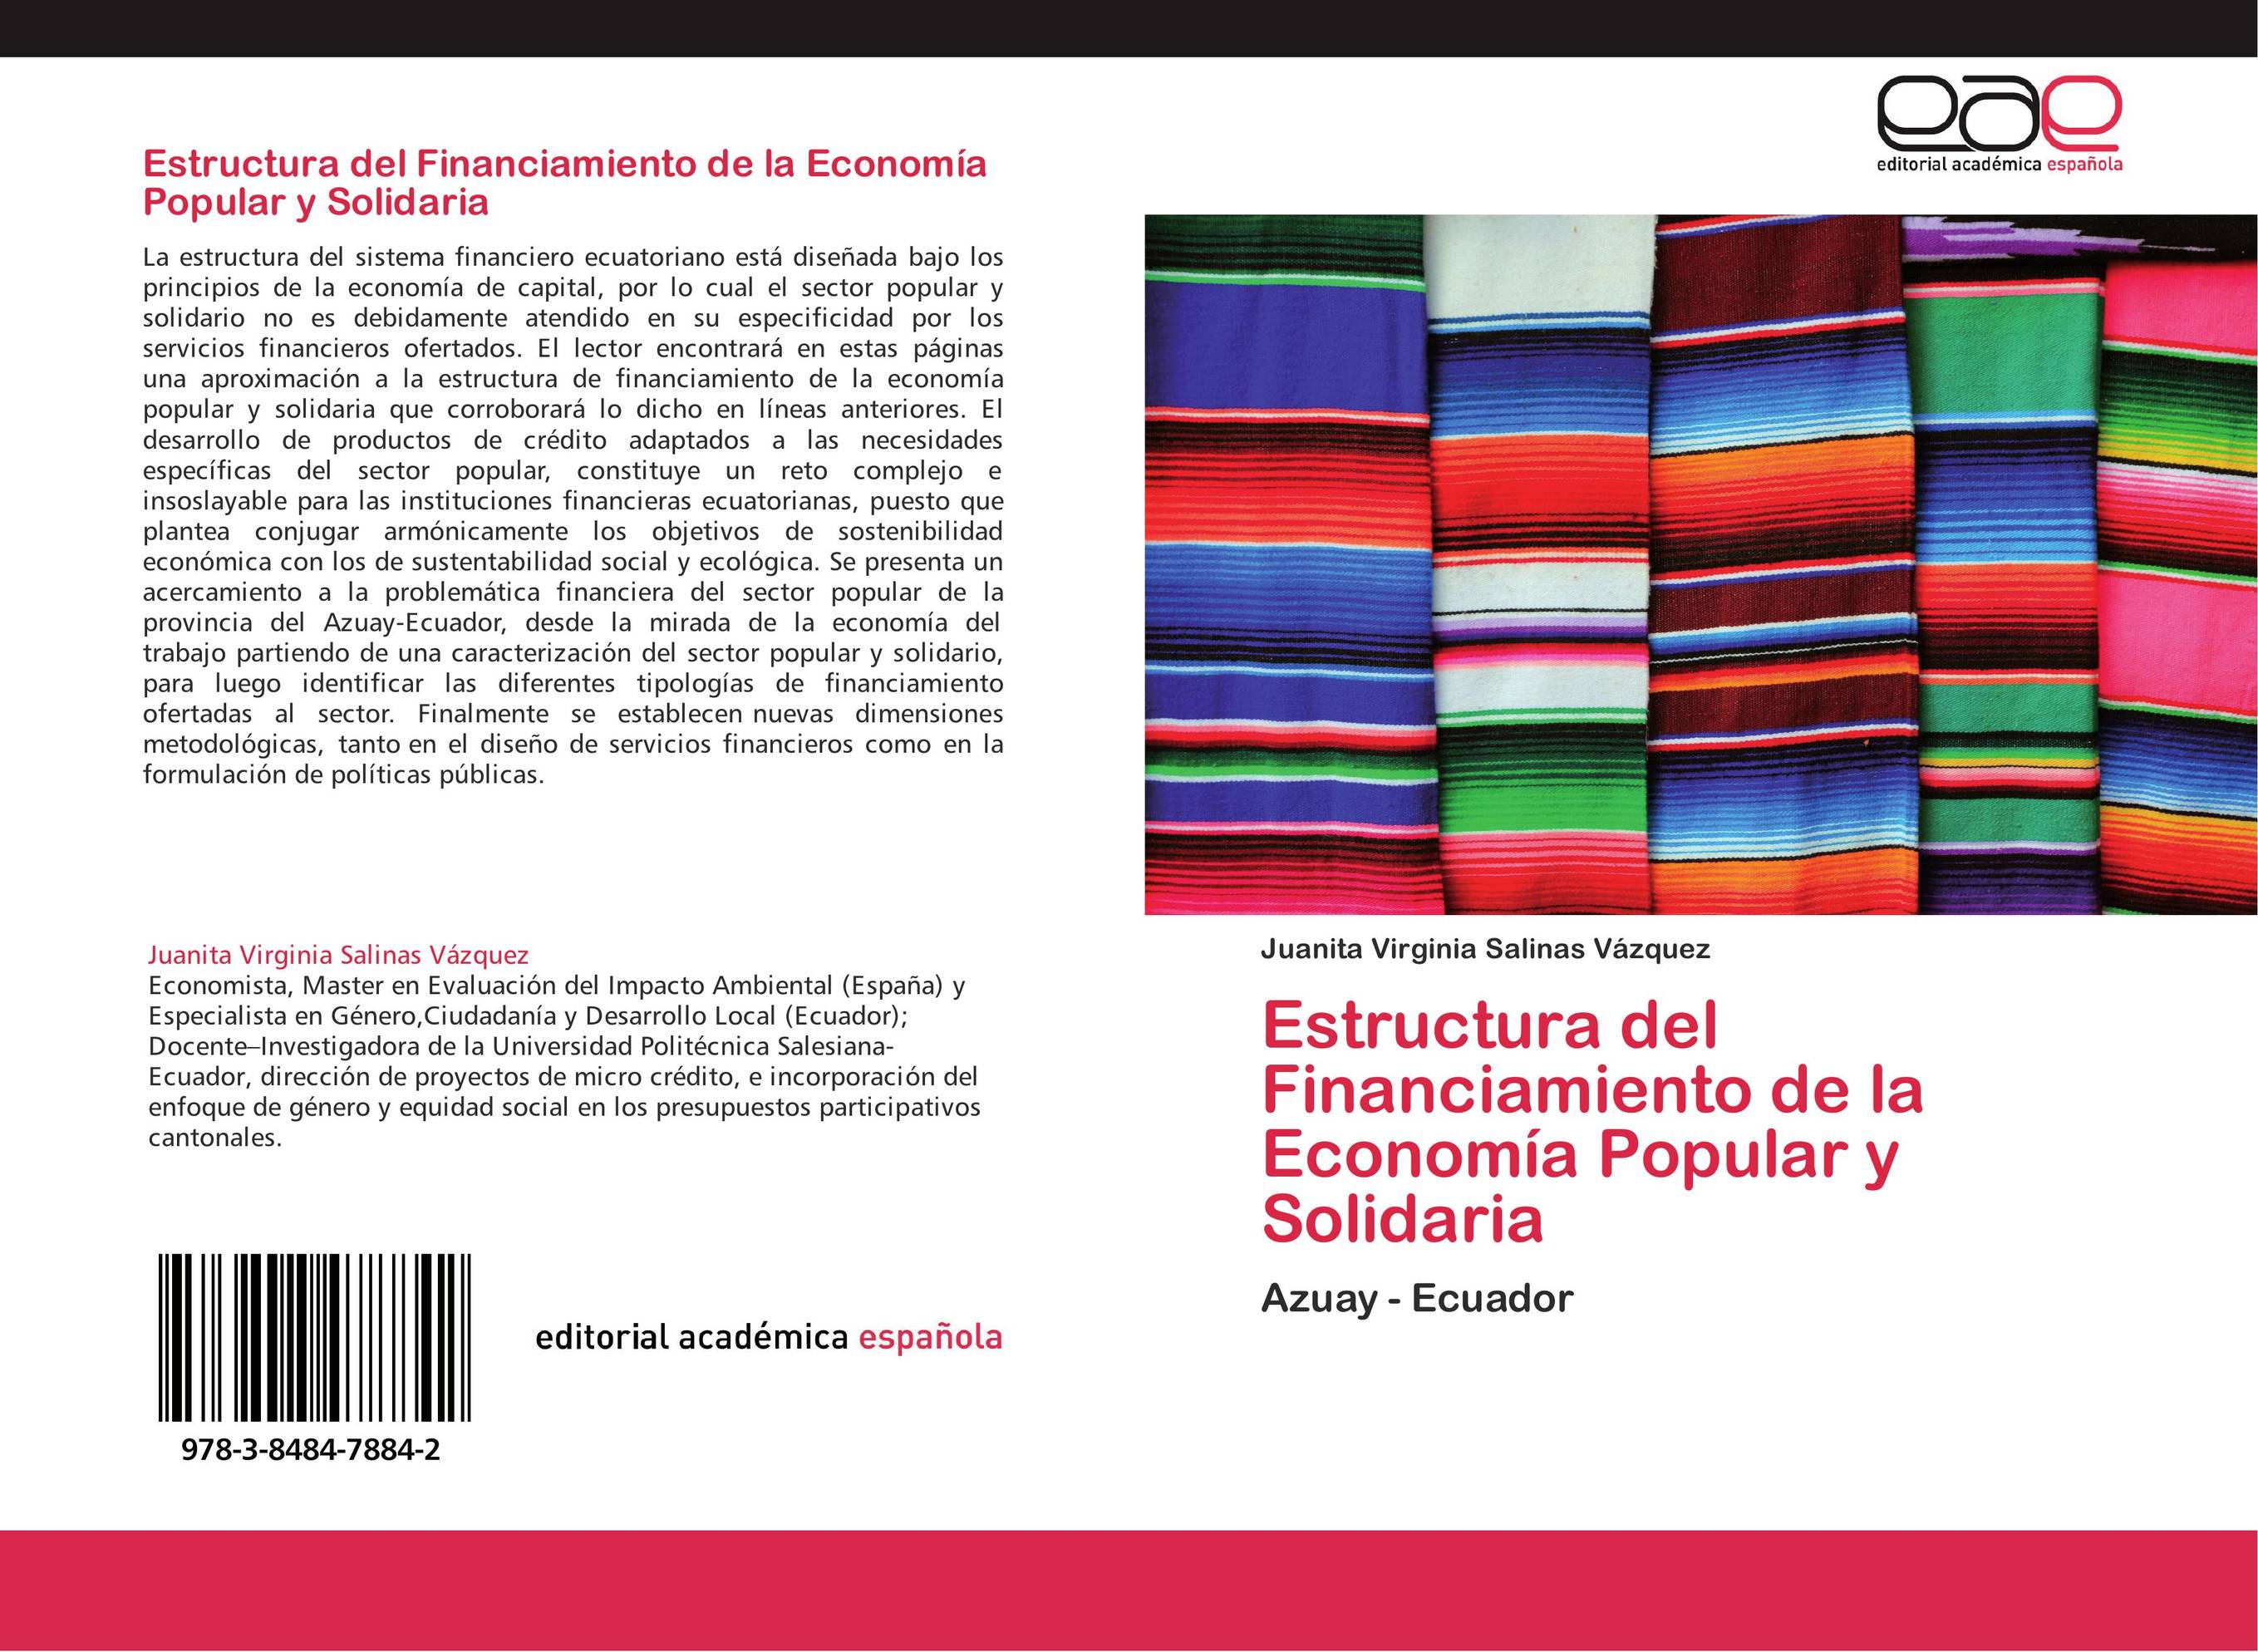 Estructura del Financiamiento de la Economía Popular y Solidaria